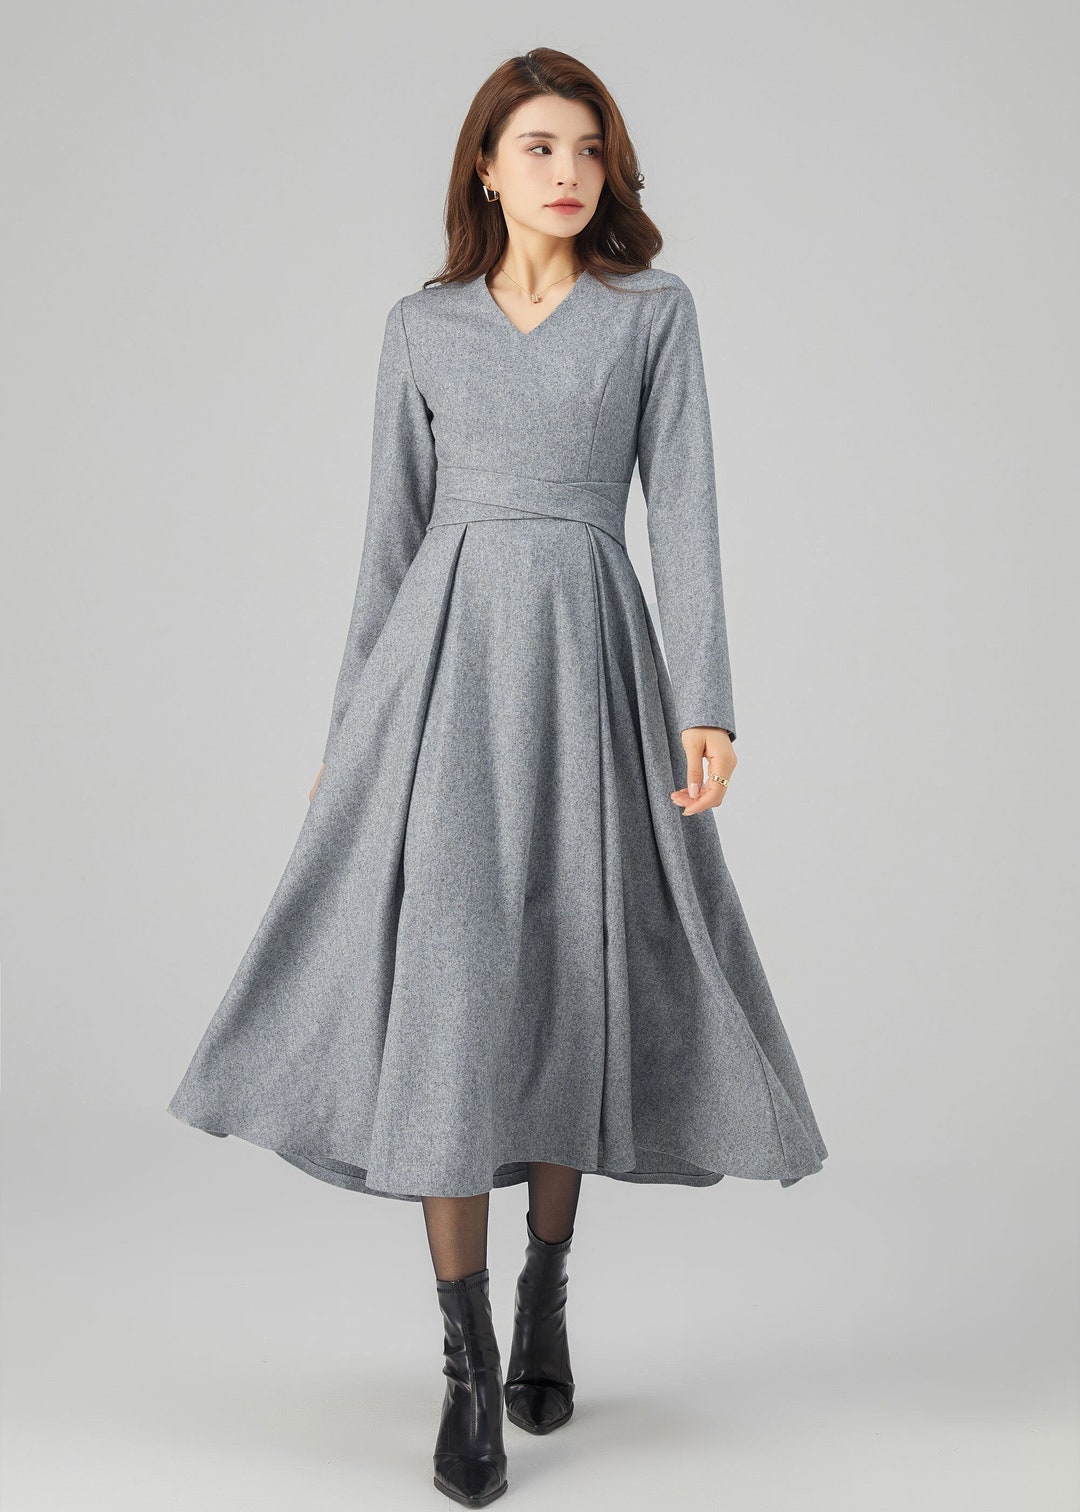 Midi Wool Dress, Winter Wool Dress, Fit and Flare Dress, Gray Wool ...